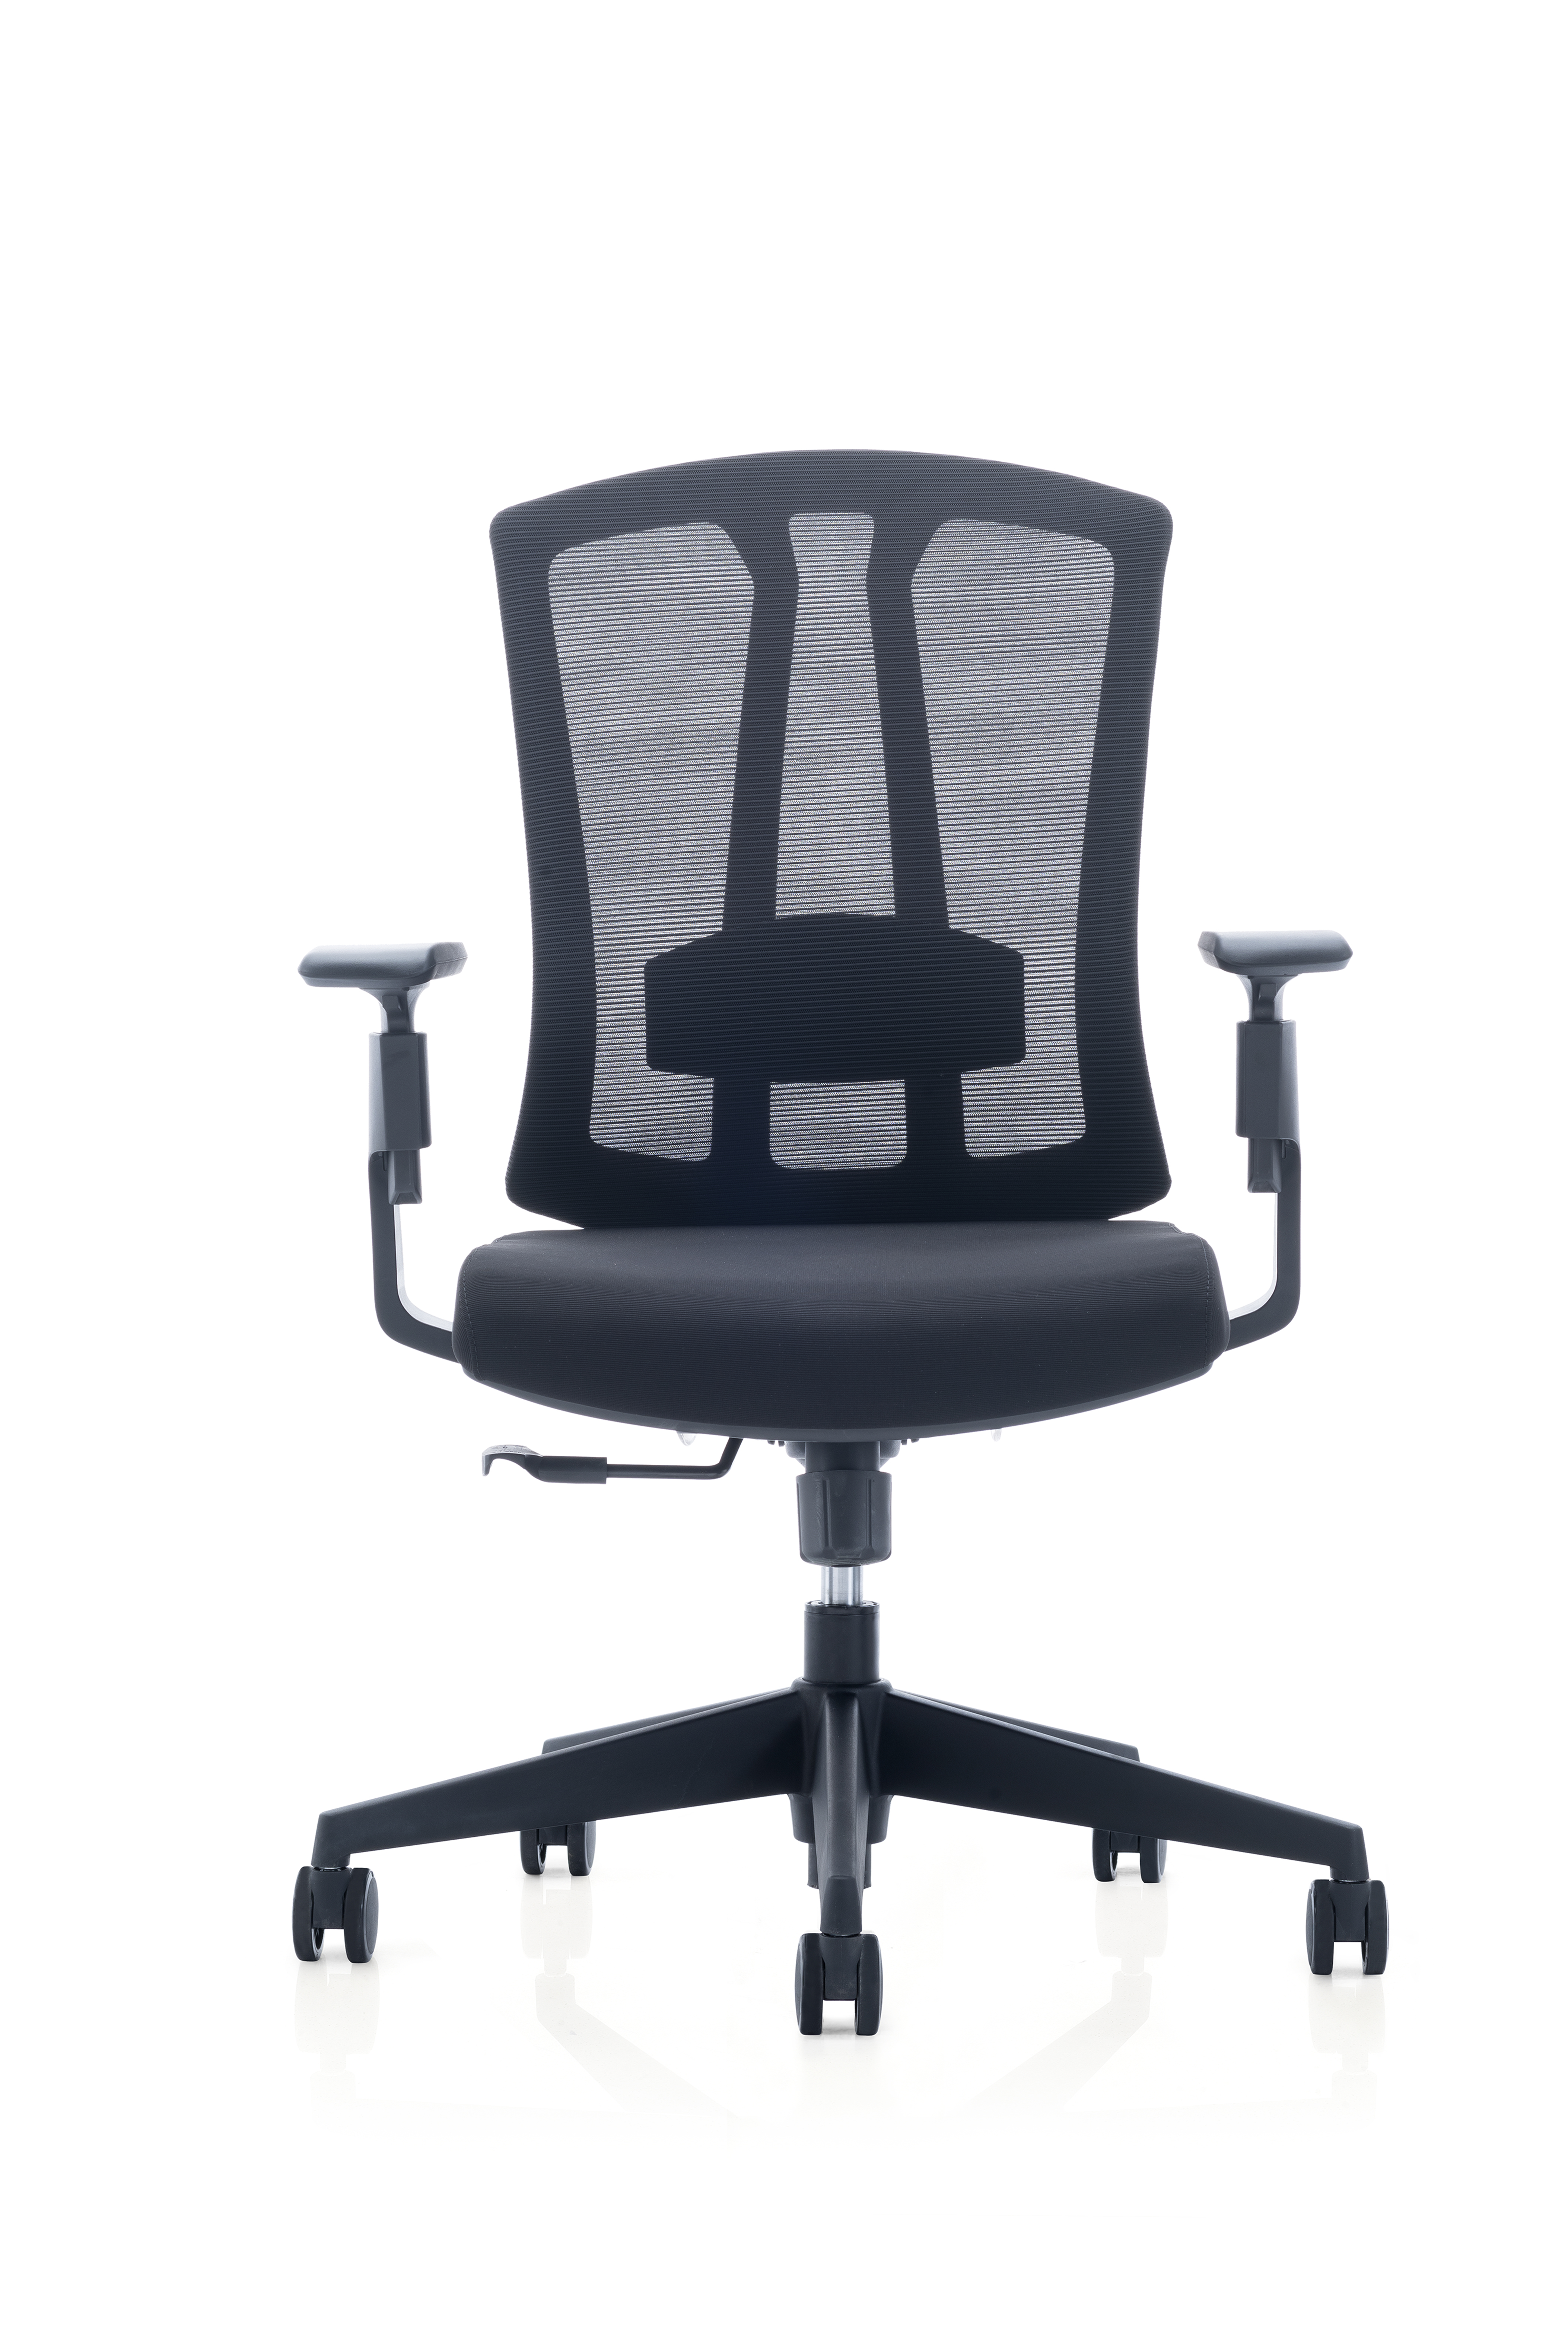 2018 Latest Design Reception Chair - CH-267B – SitZone